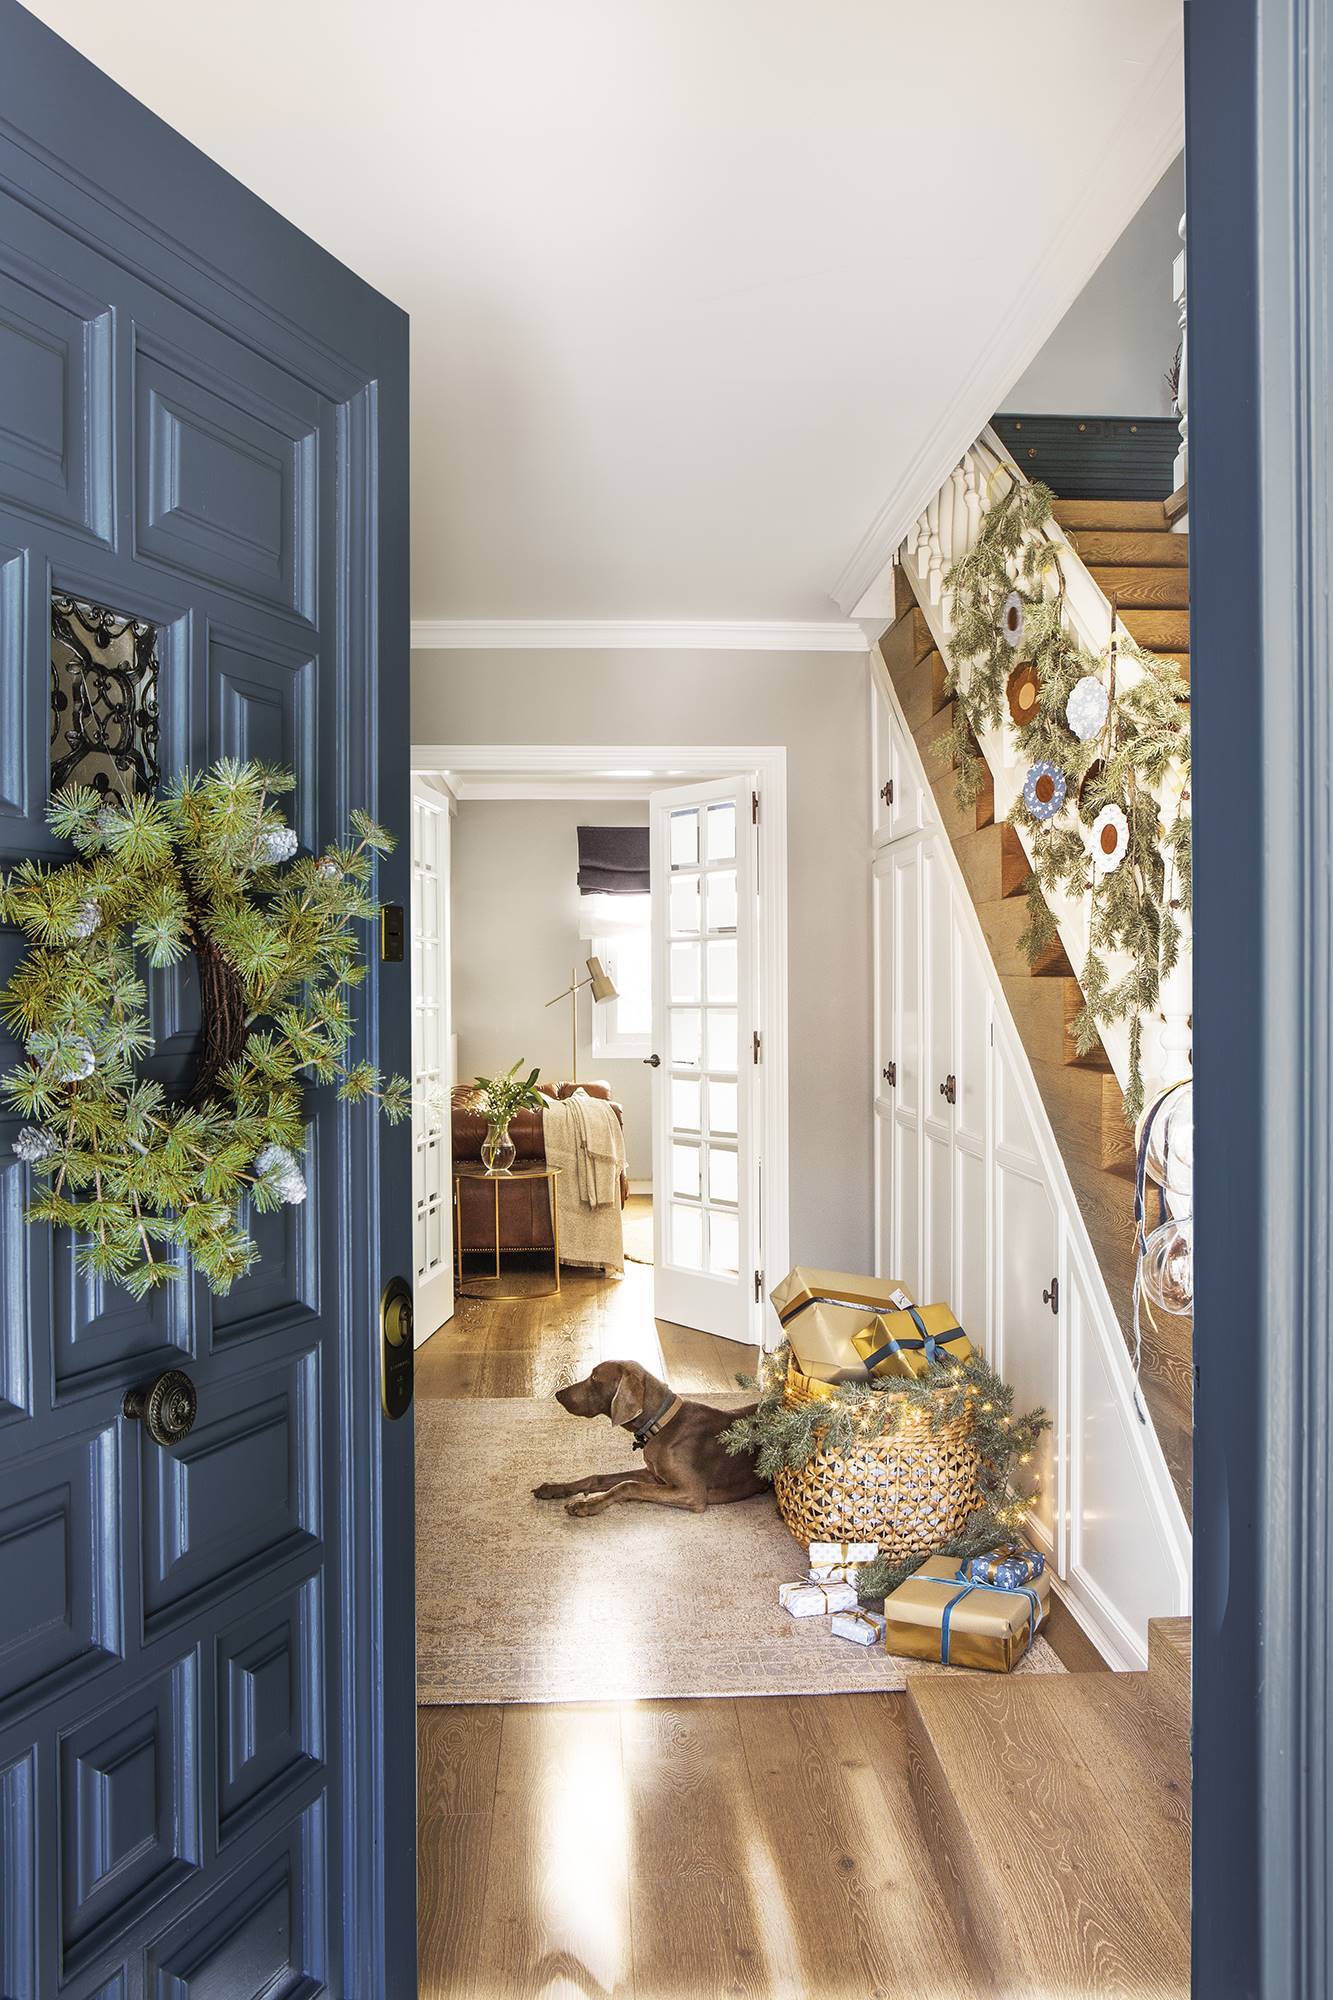 Recibidor con puerta azul con corona, guirnalda en la escalera y regalos en una cesta.